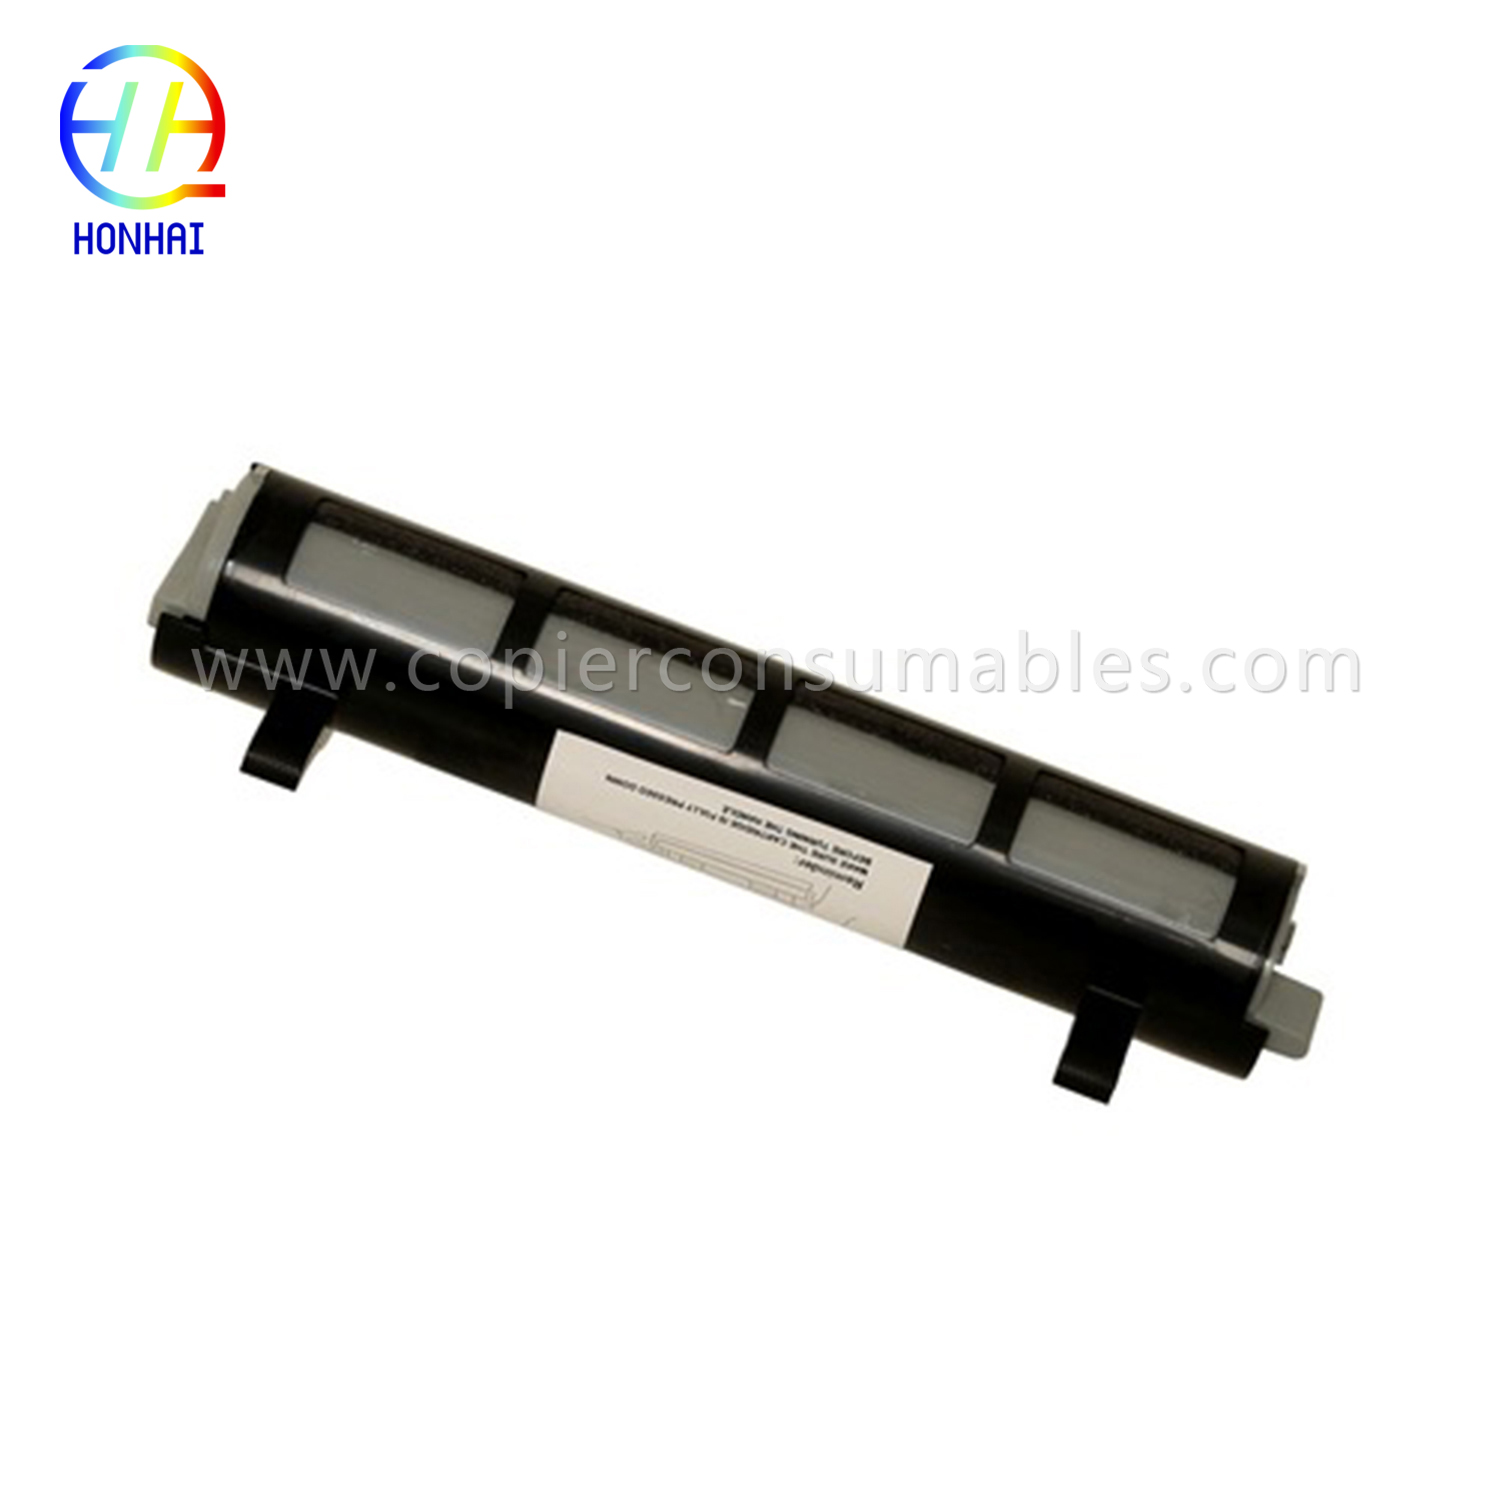 Black Toner Cartridge for Panasonic Kx-FL511 Kx-Fa83 Kx-FL541 Kx-FL611 Kx-Flm651 Kx-Flm661 Kx-Flm671 拷贝